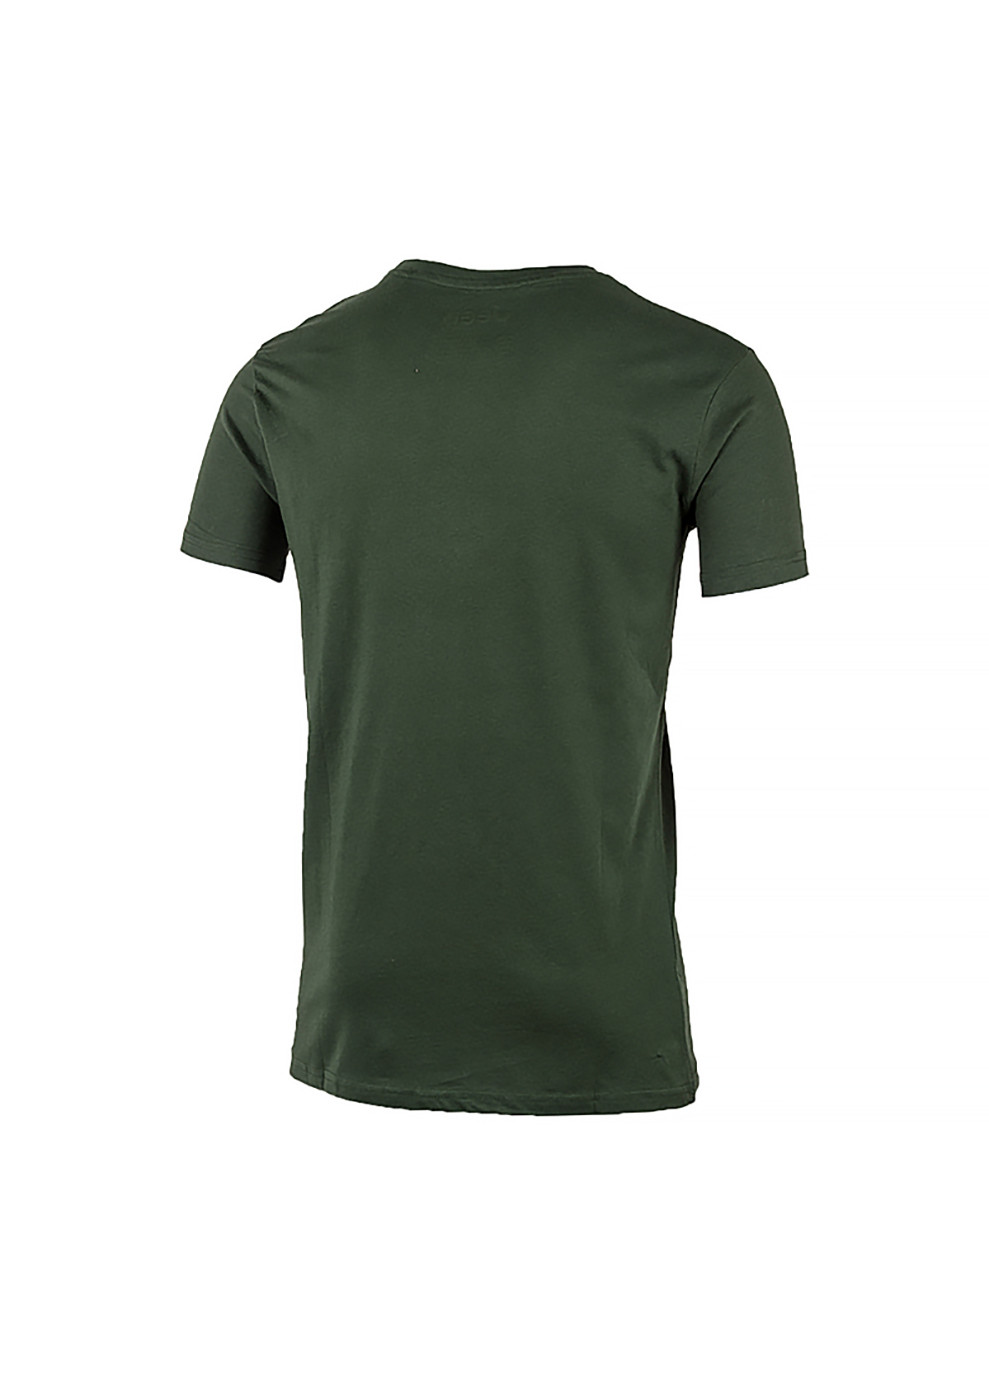 Хаки (оливковая) мужская футболка t-shirt contours j22w хаки 2xl (o102581-e853 2xl) Jeep